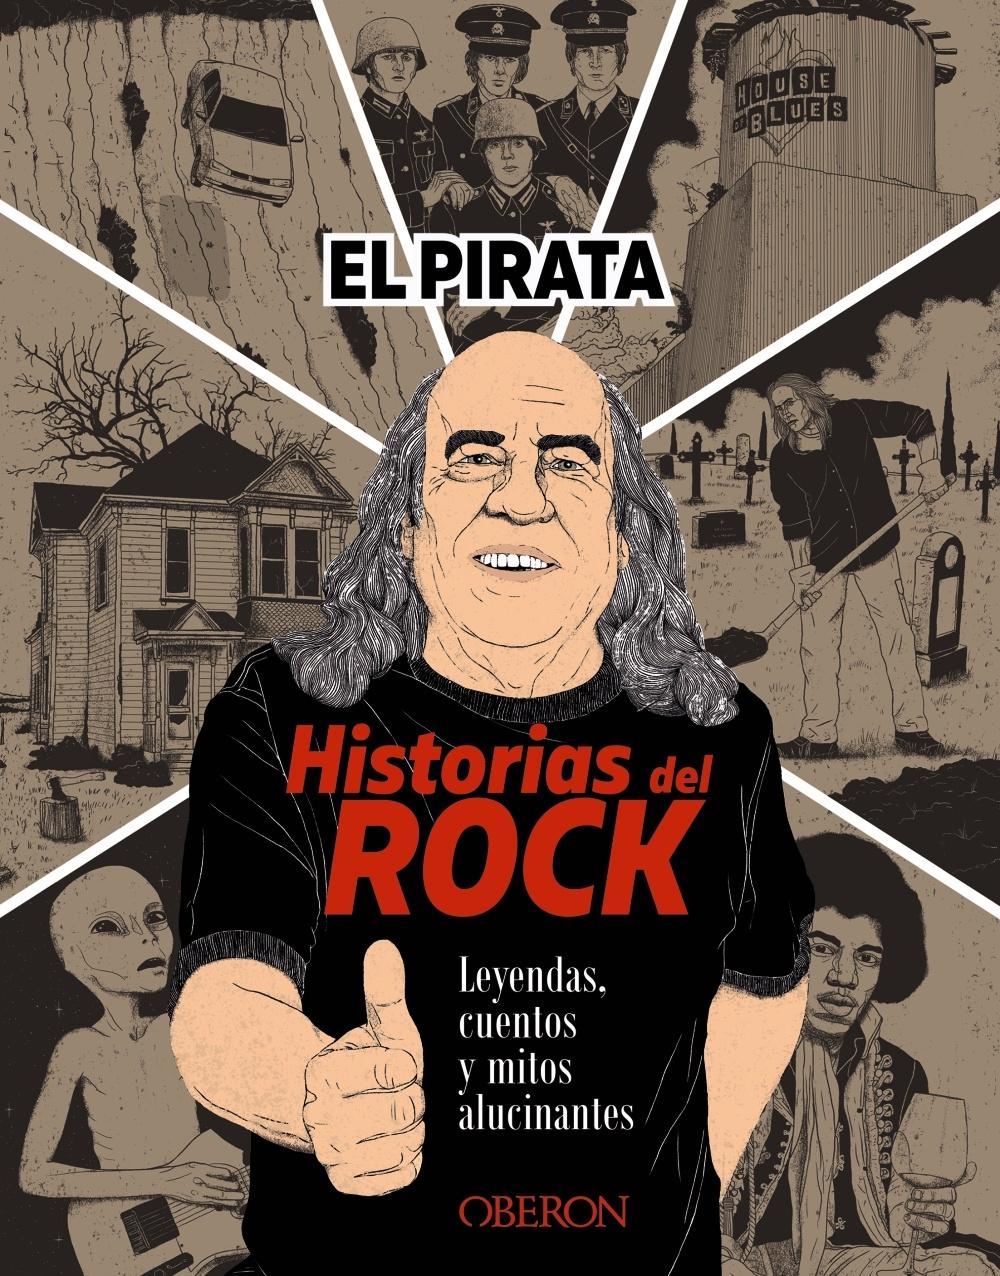 Historias del Rock "Leyendas, cuentos y mitos alucinantes"